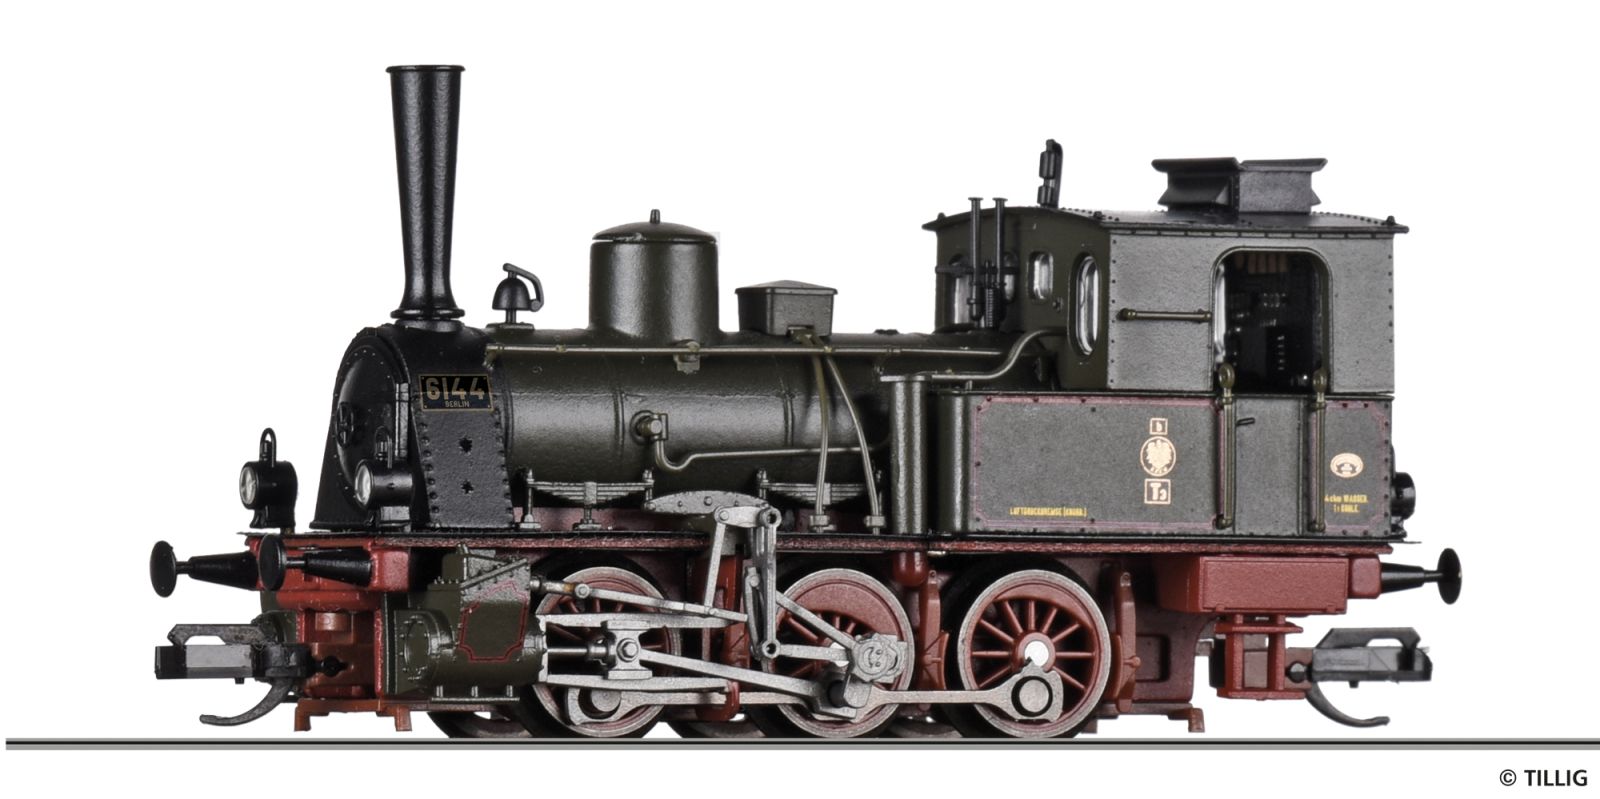 Dampflokomotive K.P.E.V.